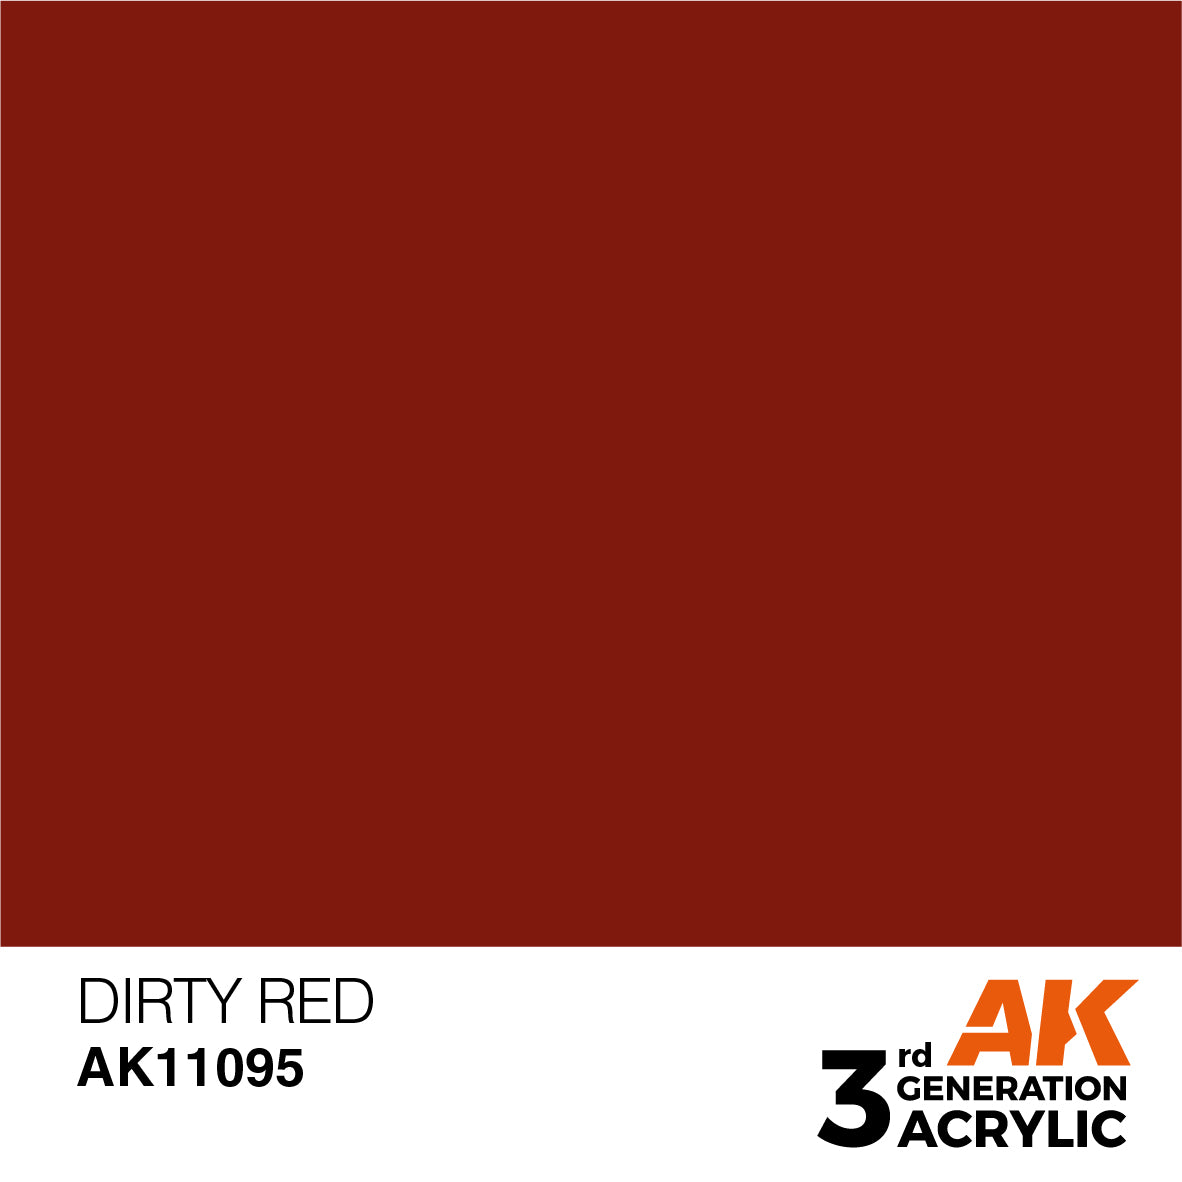 AK11095 Dirty Red